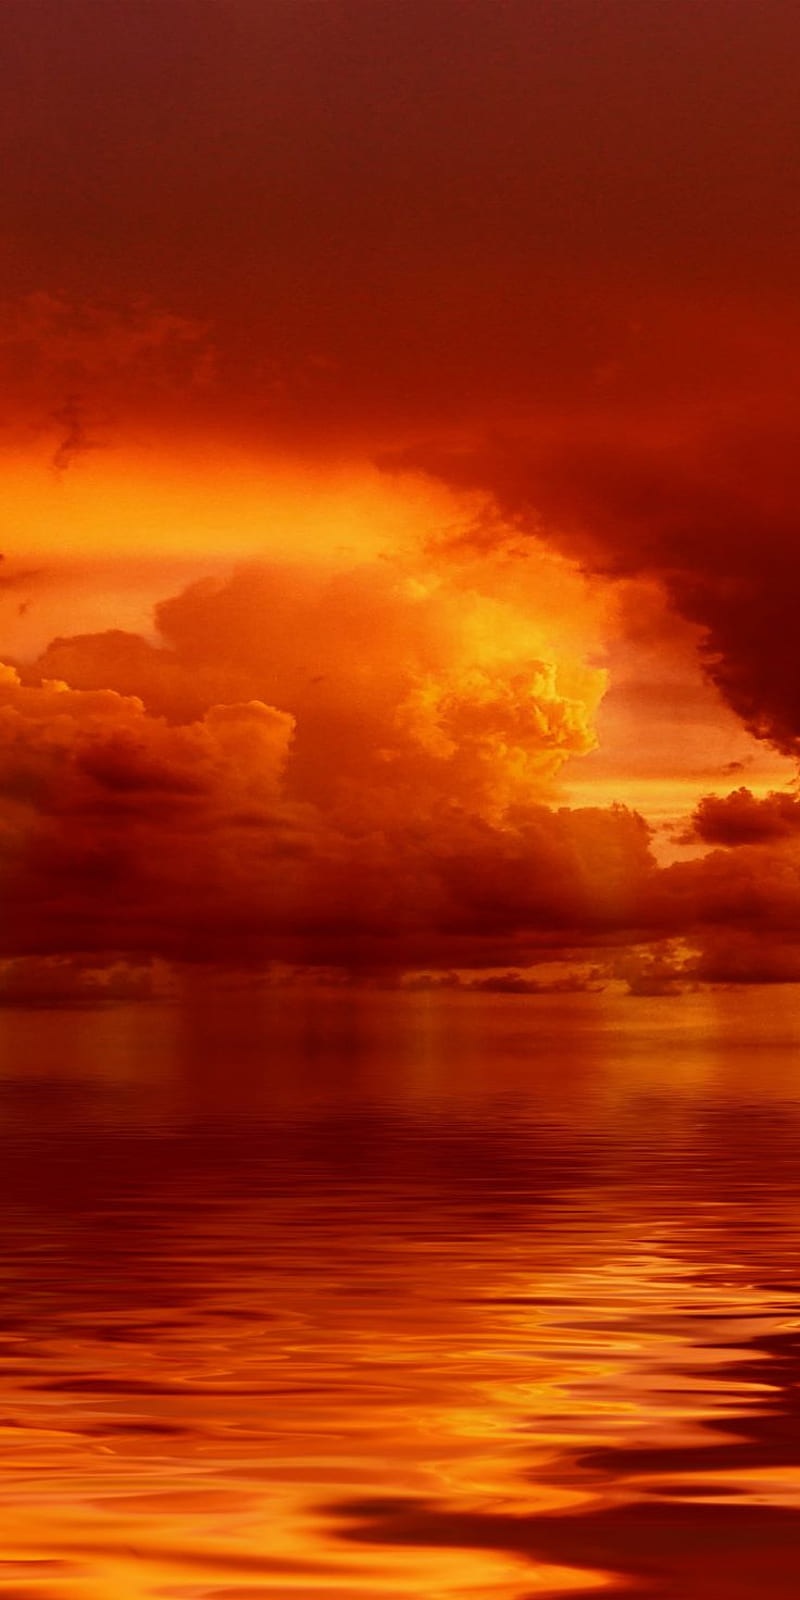 Hình nền này đầy nghệ thuật và tính thẩm mỹ với mây đỏ, cơn bão và hoàng hôn lãng mạn. Với sự kết hợp các màu sáng như pastel vàng cam, hình nền này sẽ mang đến cảm giác yên bình và giúp bạn thư giãn sau một ngày làm việc căng thẳng. Cùng ngắm nhìn hình nền này để thấy sự độc đáo và sự nghệ thuật của nó.